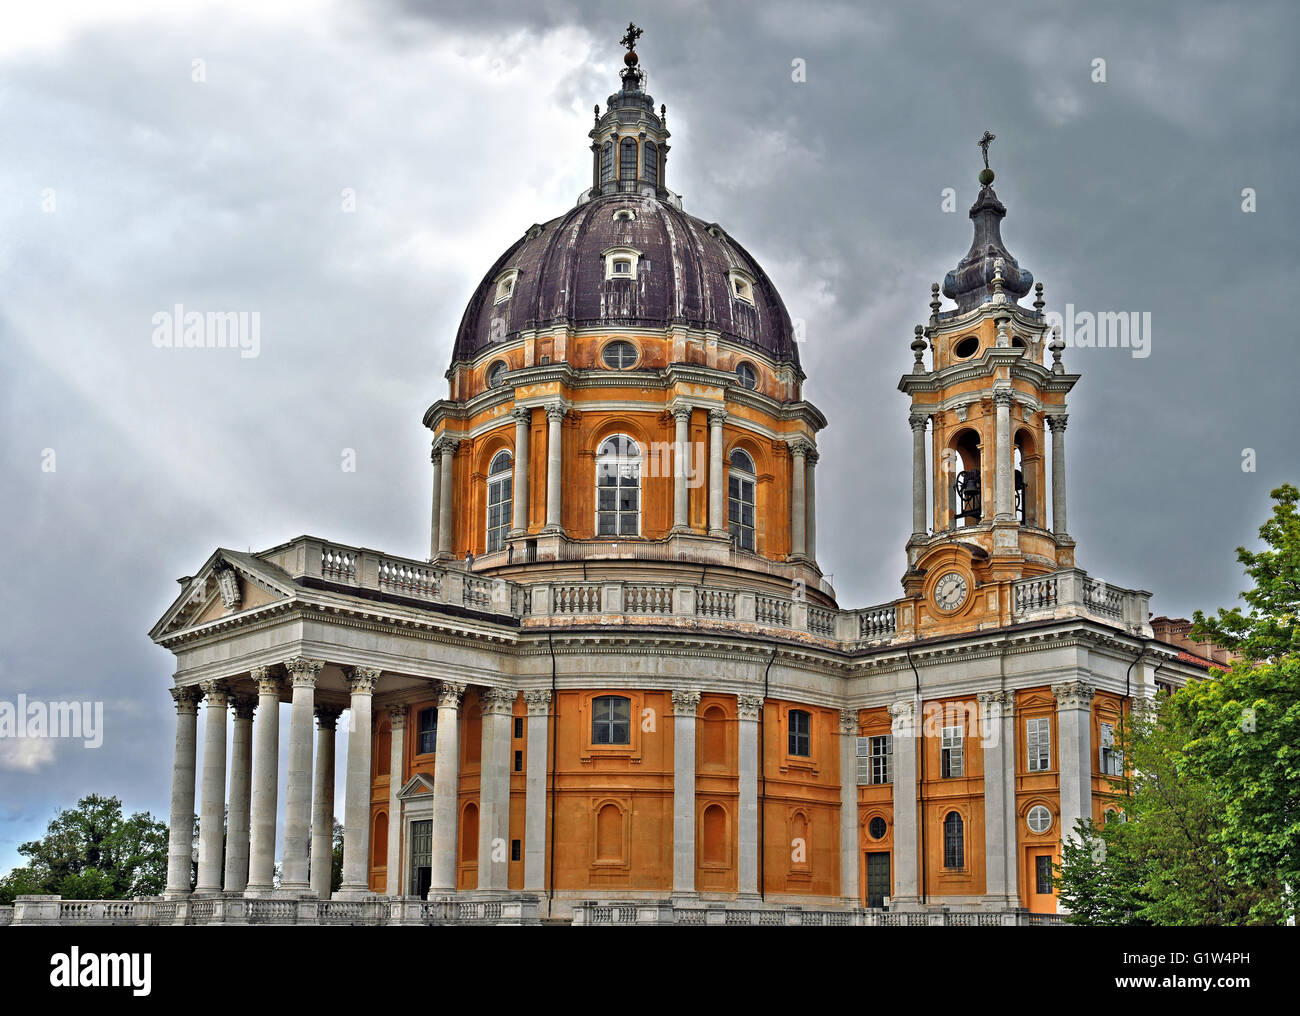 Turin.The Basilica of Superga. Stock Photo